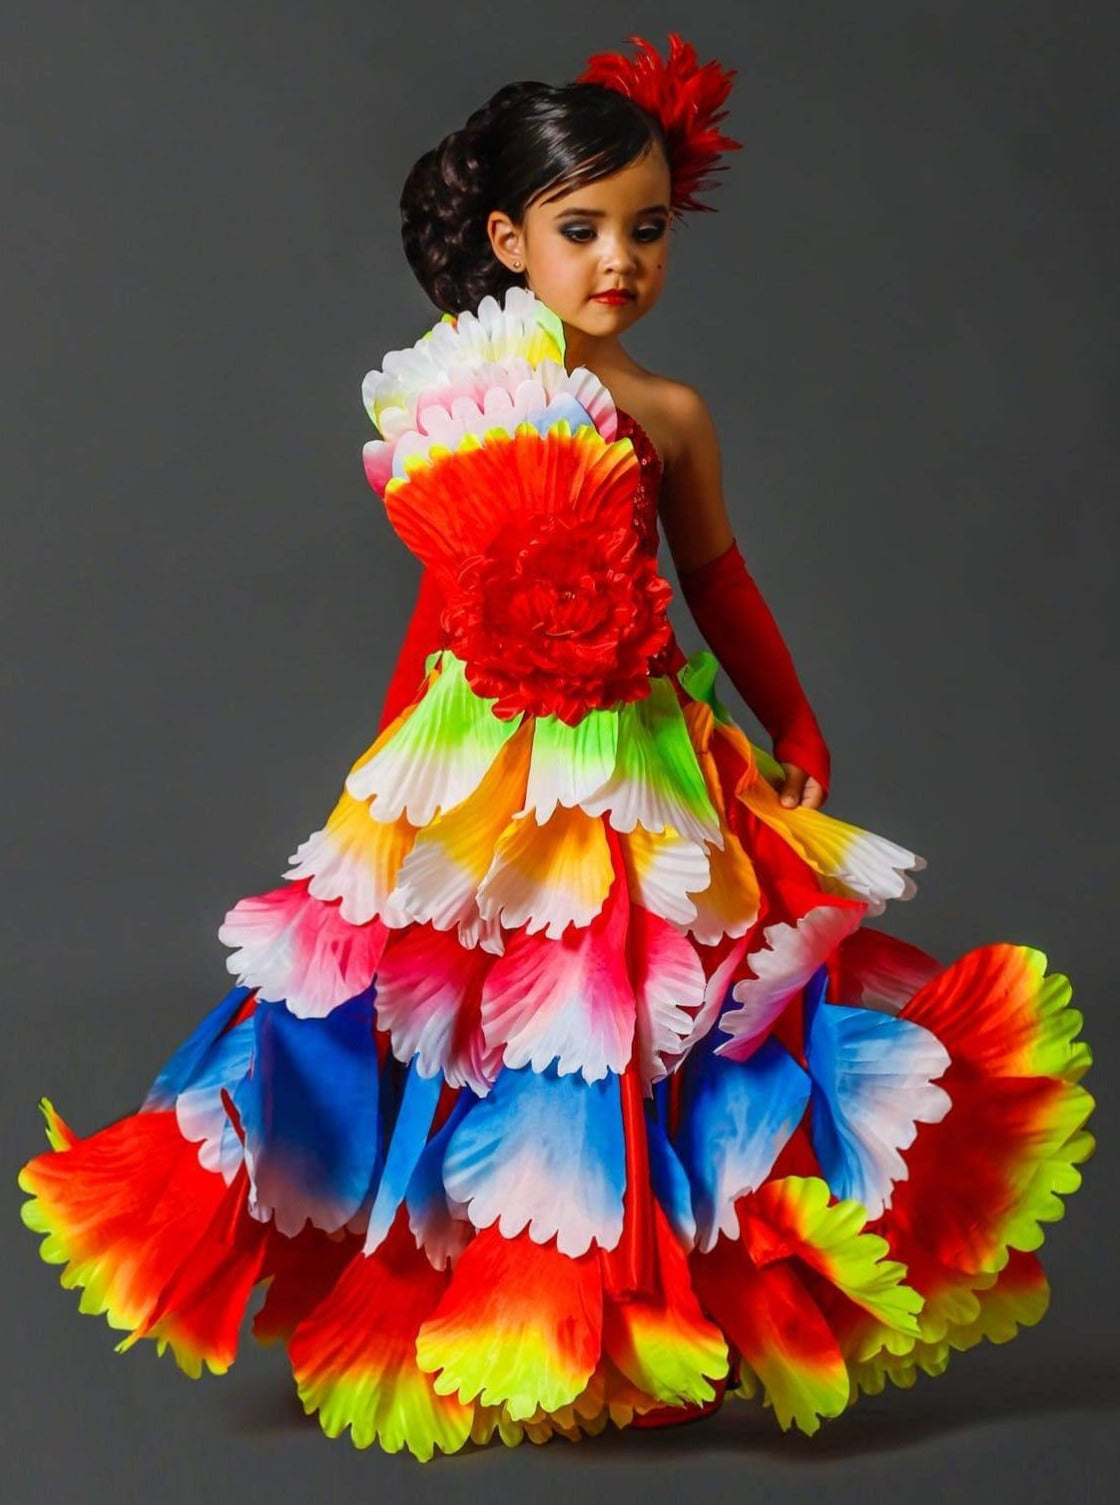 Flamenco Dress, Size 40